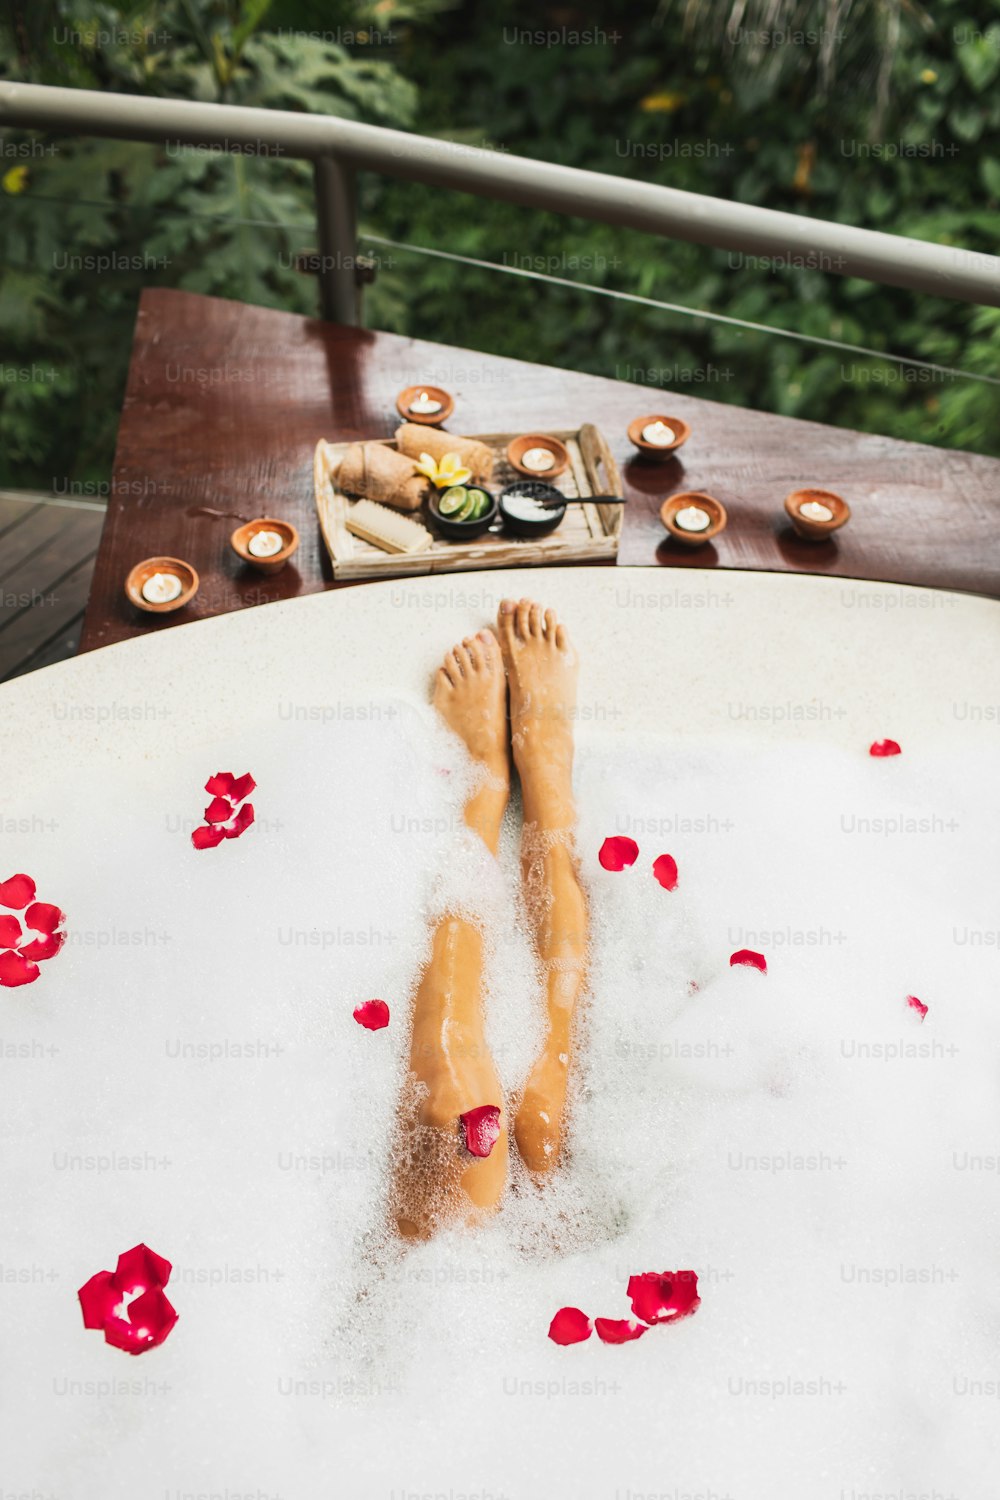 Les jambes de femme dans la baignoire avec des bulles de mousse et des bougies autour. Spa romantique avec chaux, gommage, sel, serviettes et brosse dans un plateau en bois. Traitement de beauté biologique et naturel.